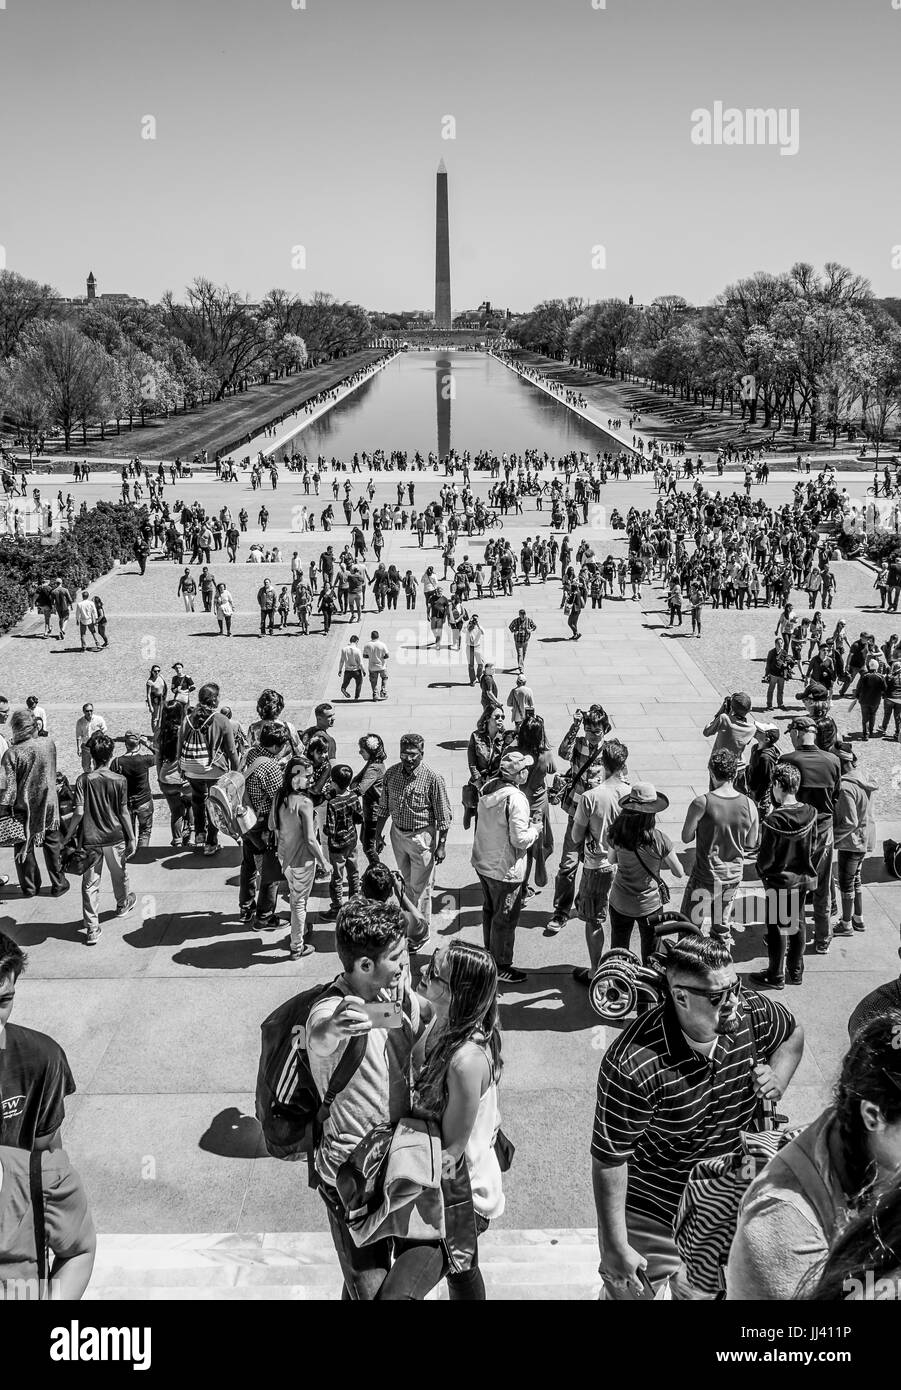 Lieu populaire et occupé à Washington - les touristes visitant le Mémorial de Lincoln et d'un miroir d'eau - WASHINGTON / DISTRICT DE COLUMBIA - 8 AVRIL 2017 Banque D'Images